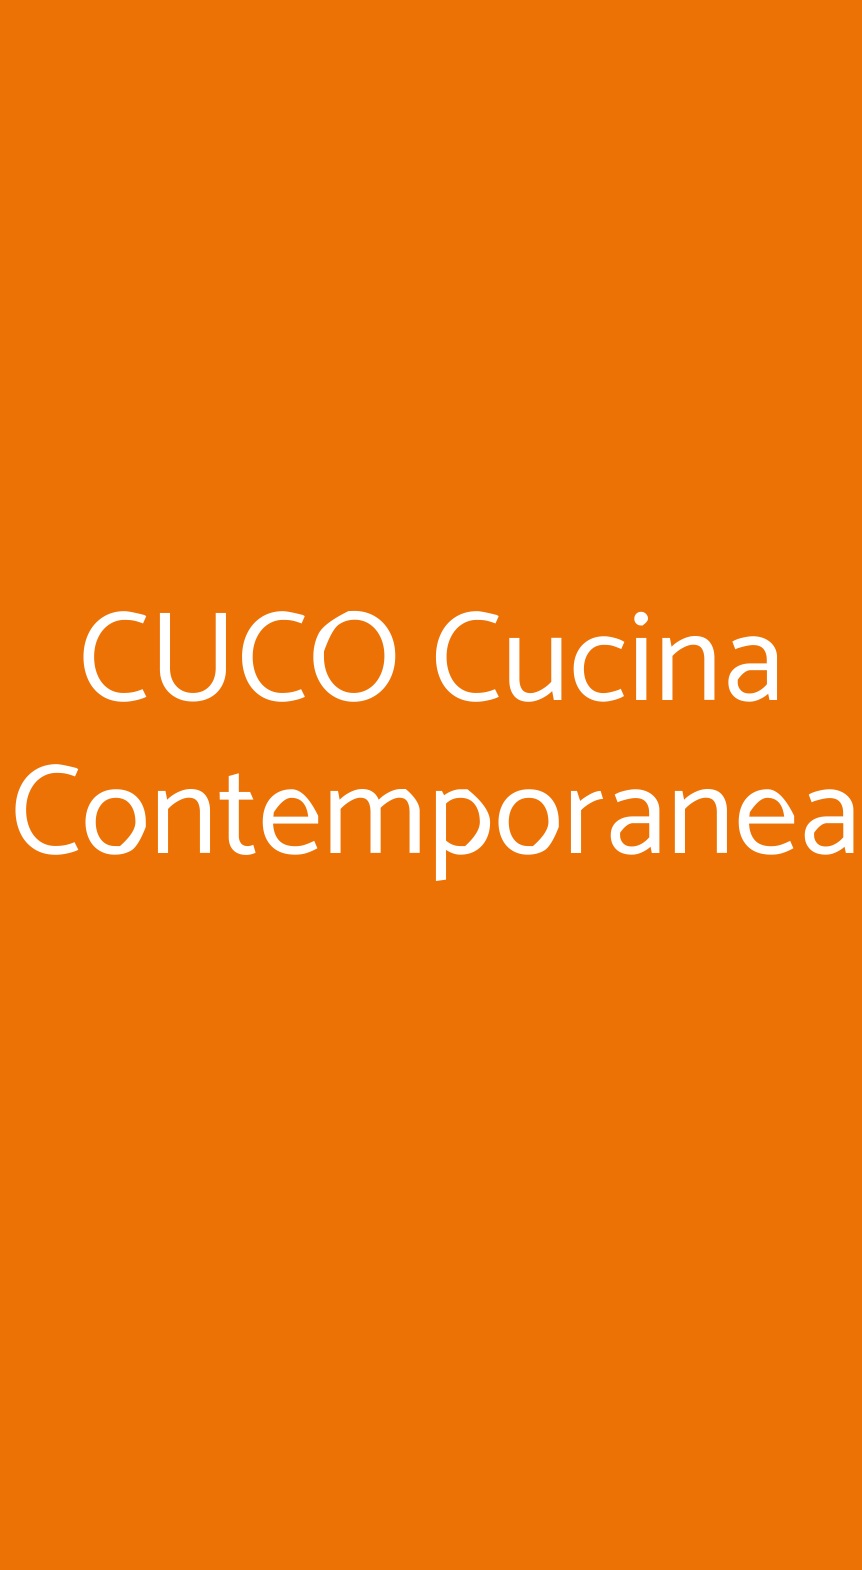 CUCO Cucina Contemporanea Firenze menù 1 pagina